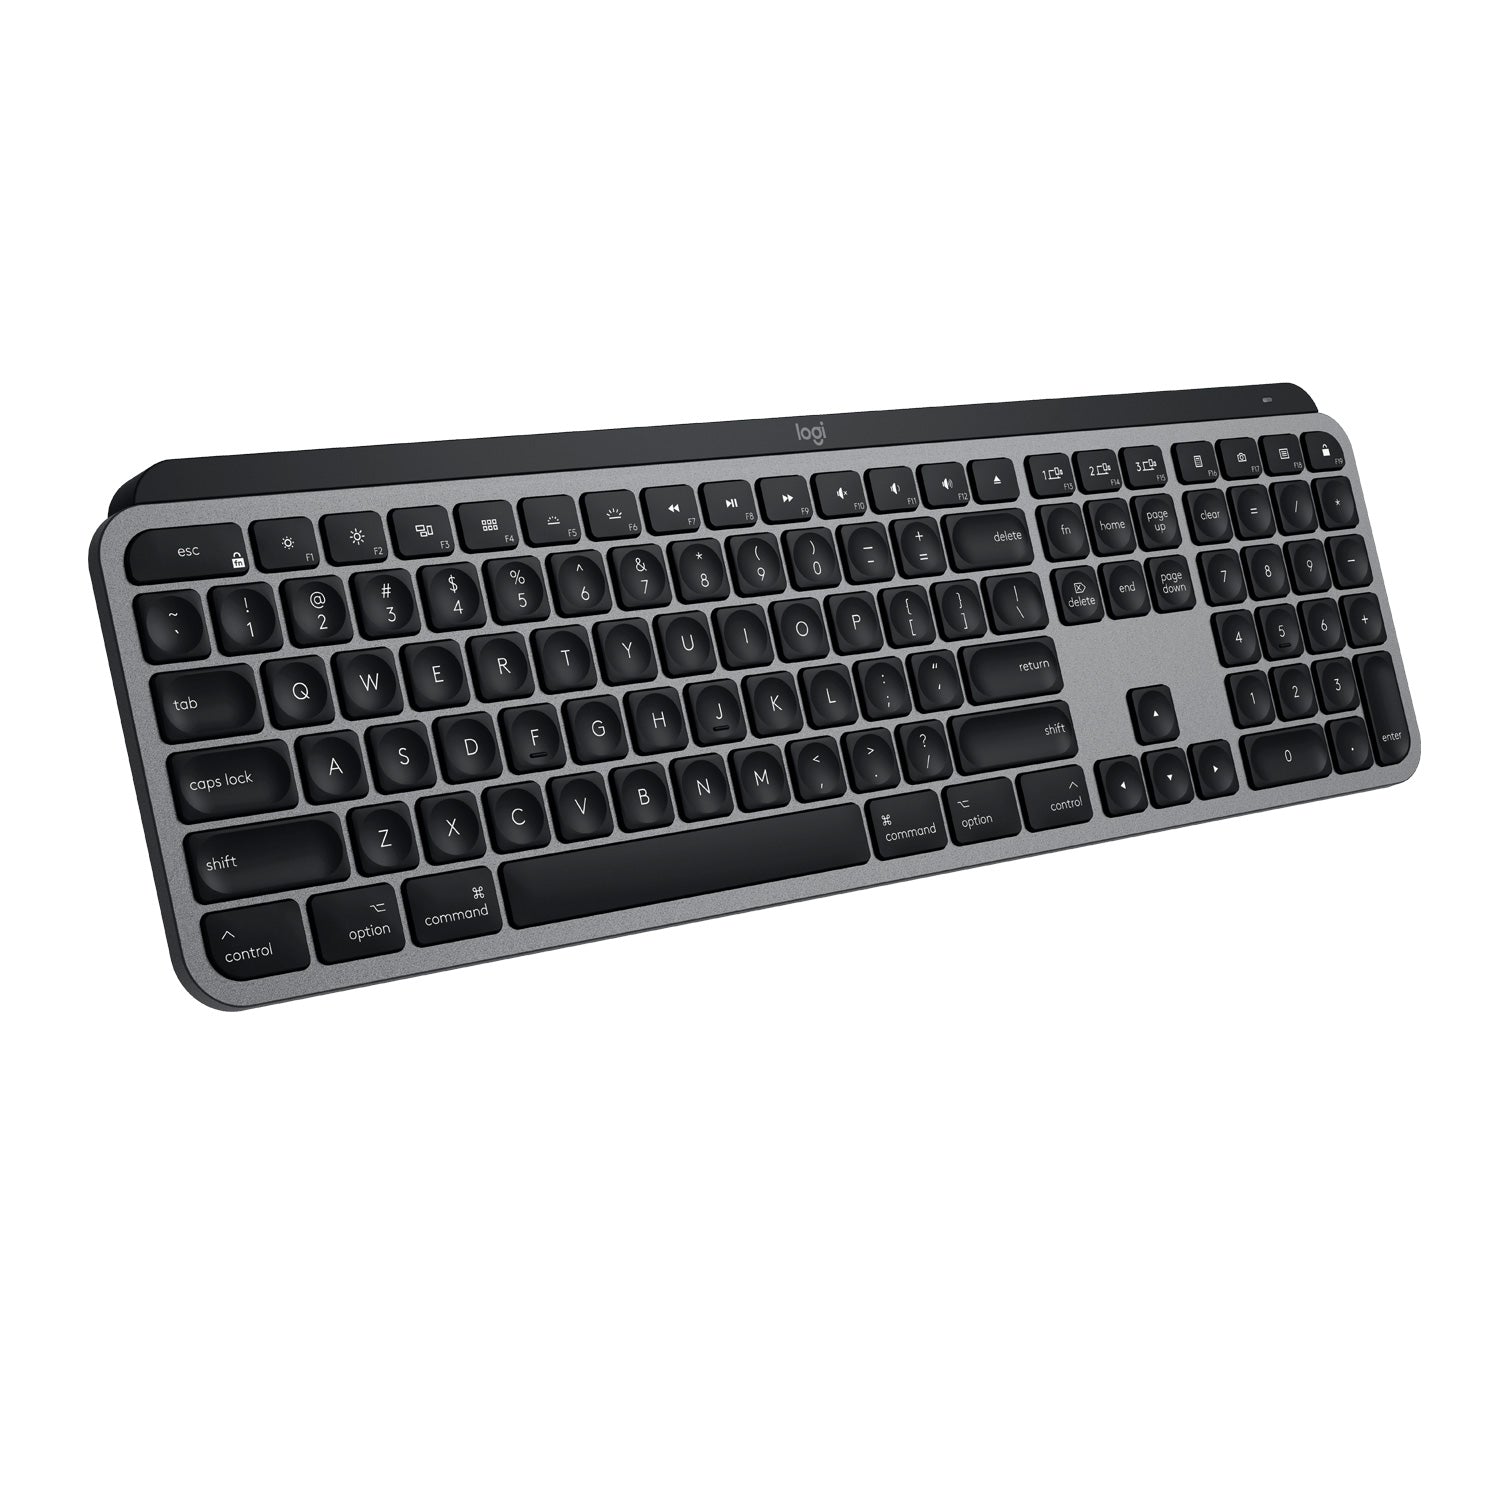 Logitech MX Keys for Mac 920-009552 Wireless Keyboard